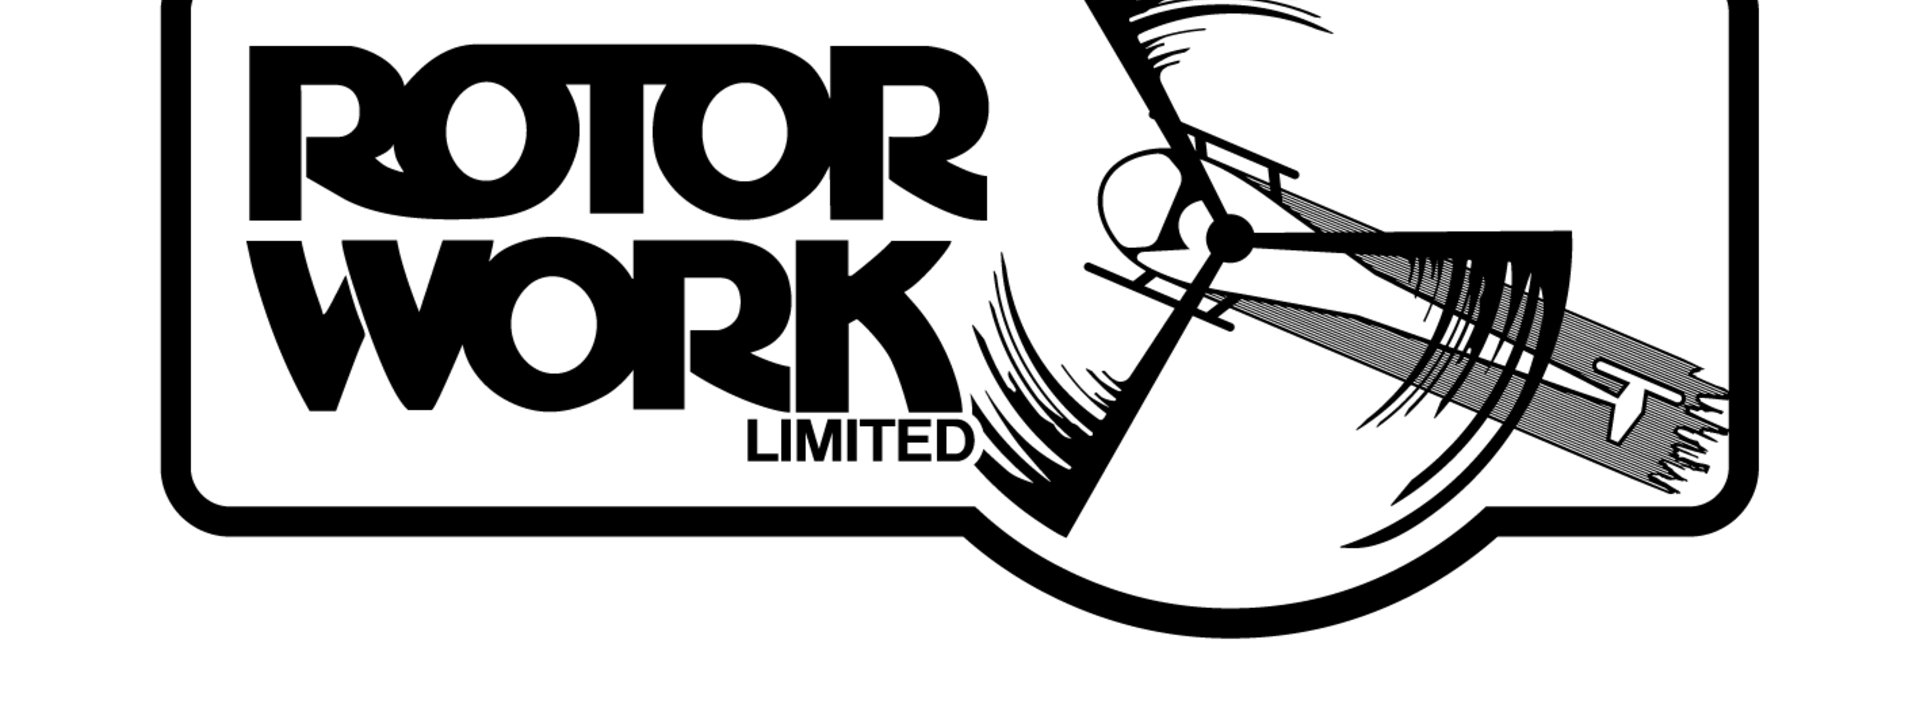 rotor work_logo2-03.png